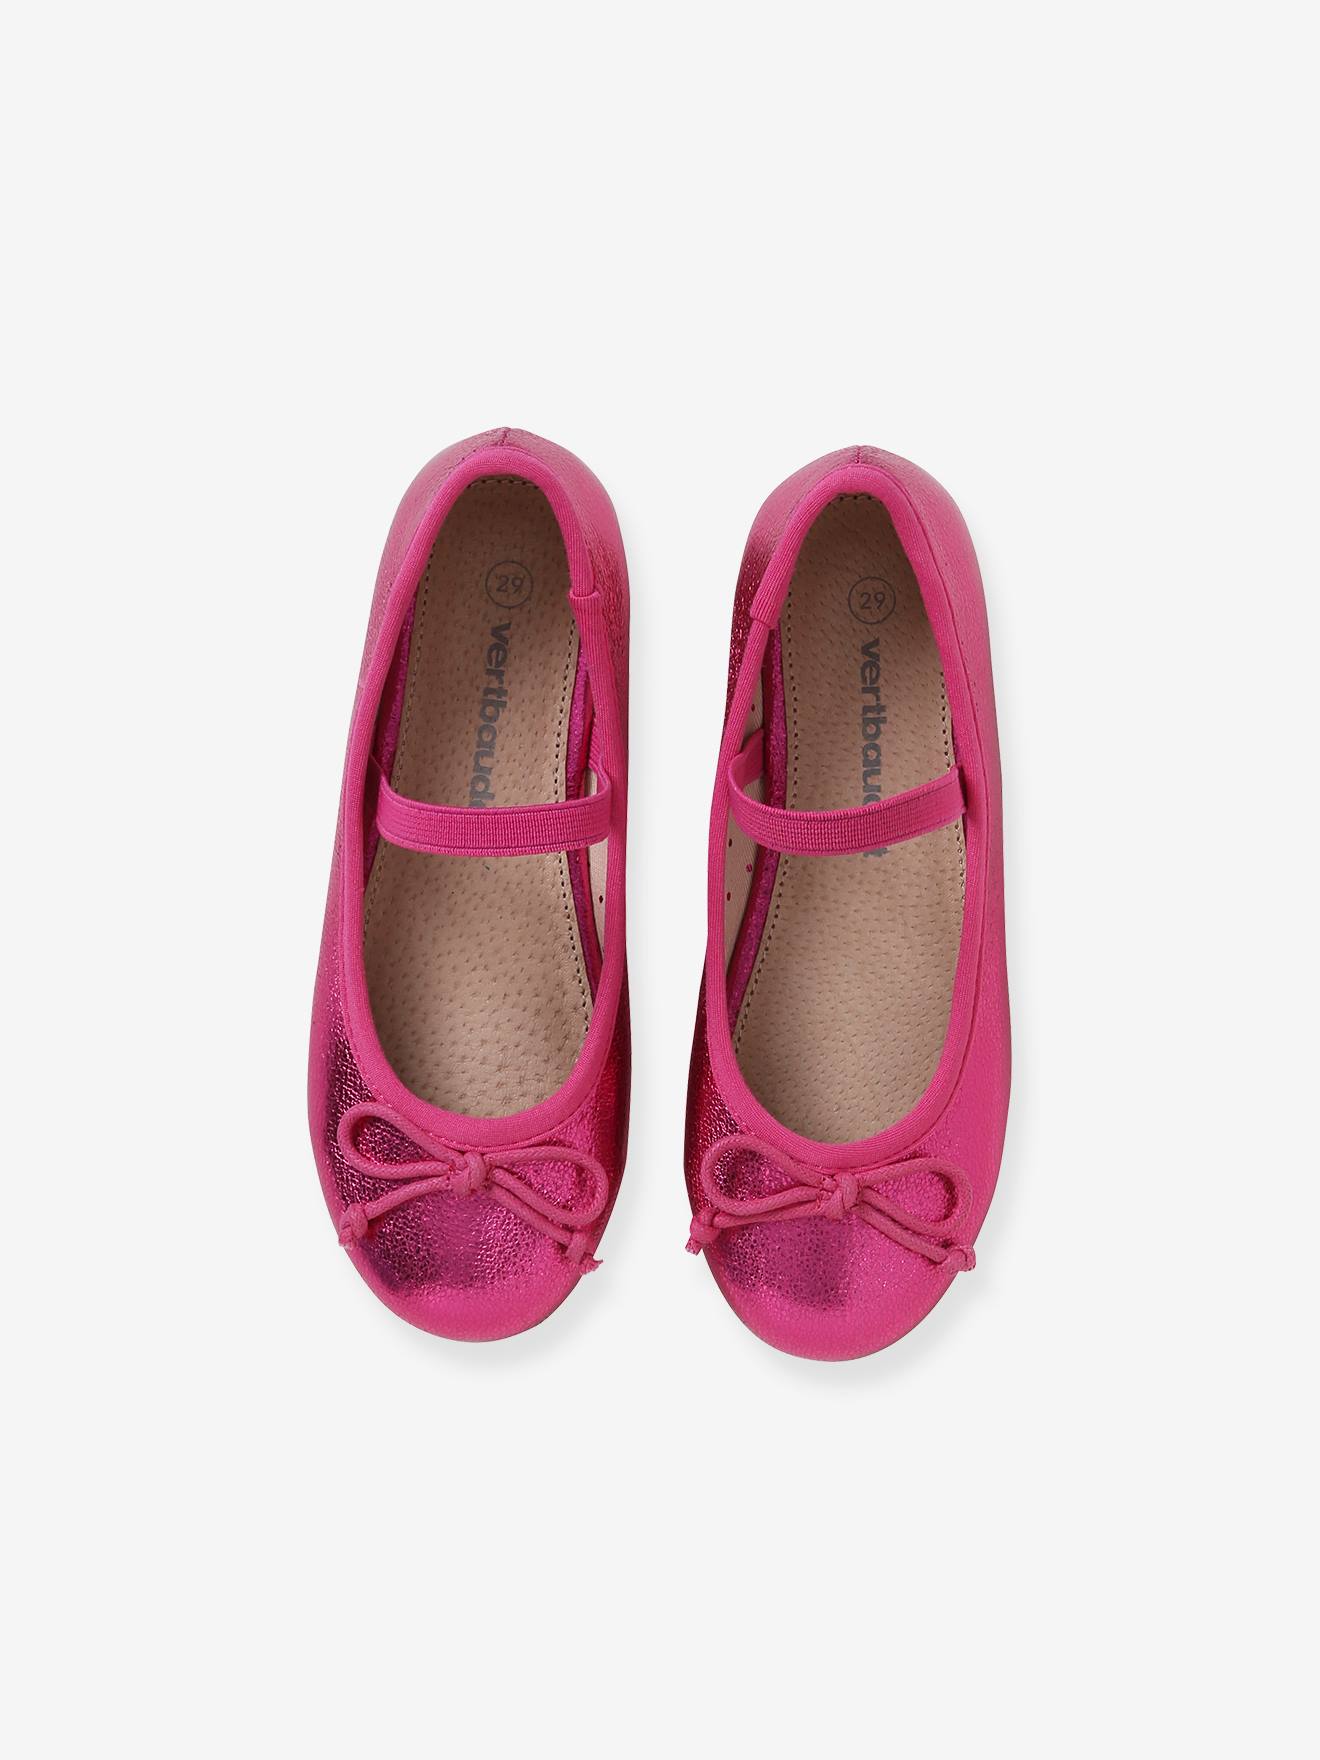 bebe Toddler Girls Ballet Flats Vinyl Glitter Elastic Ankle Strap Mary Jane Sandals 